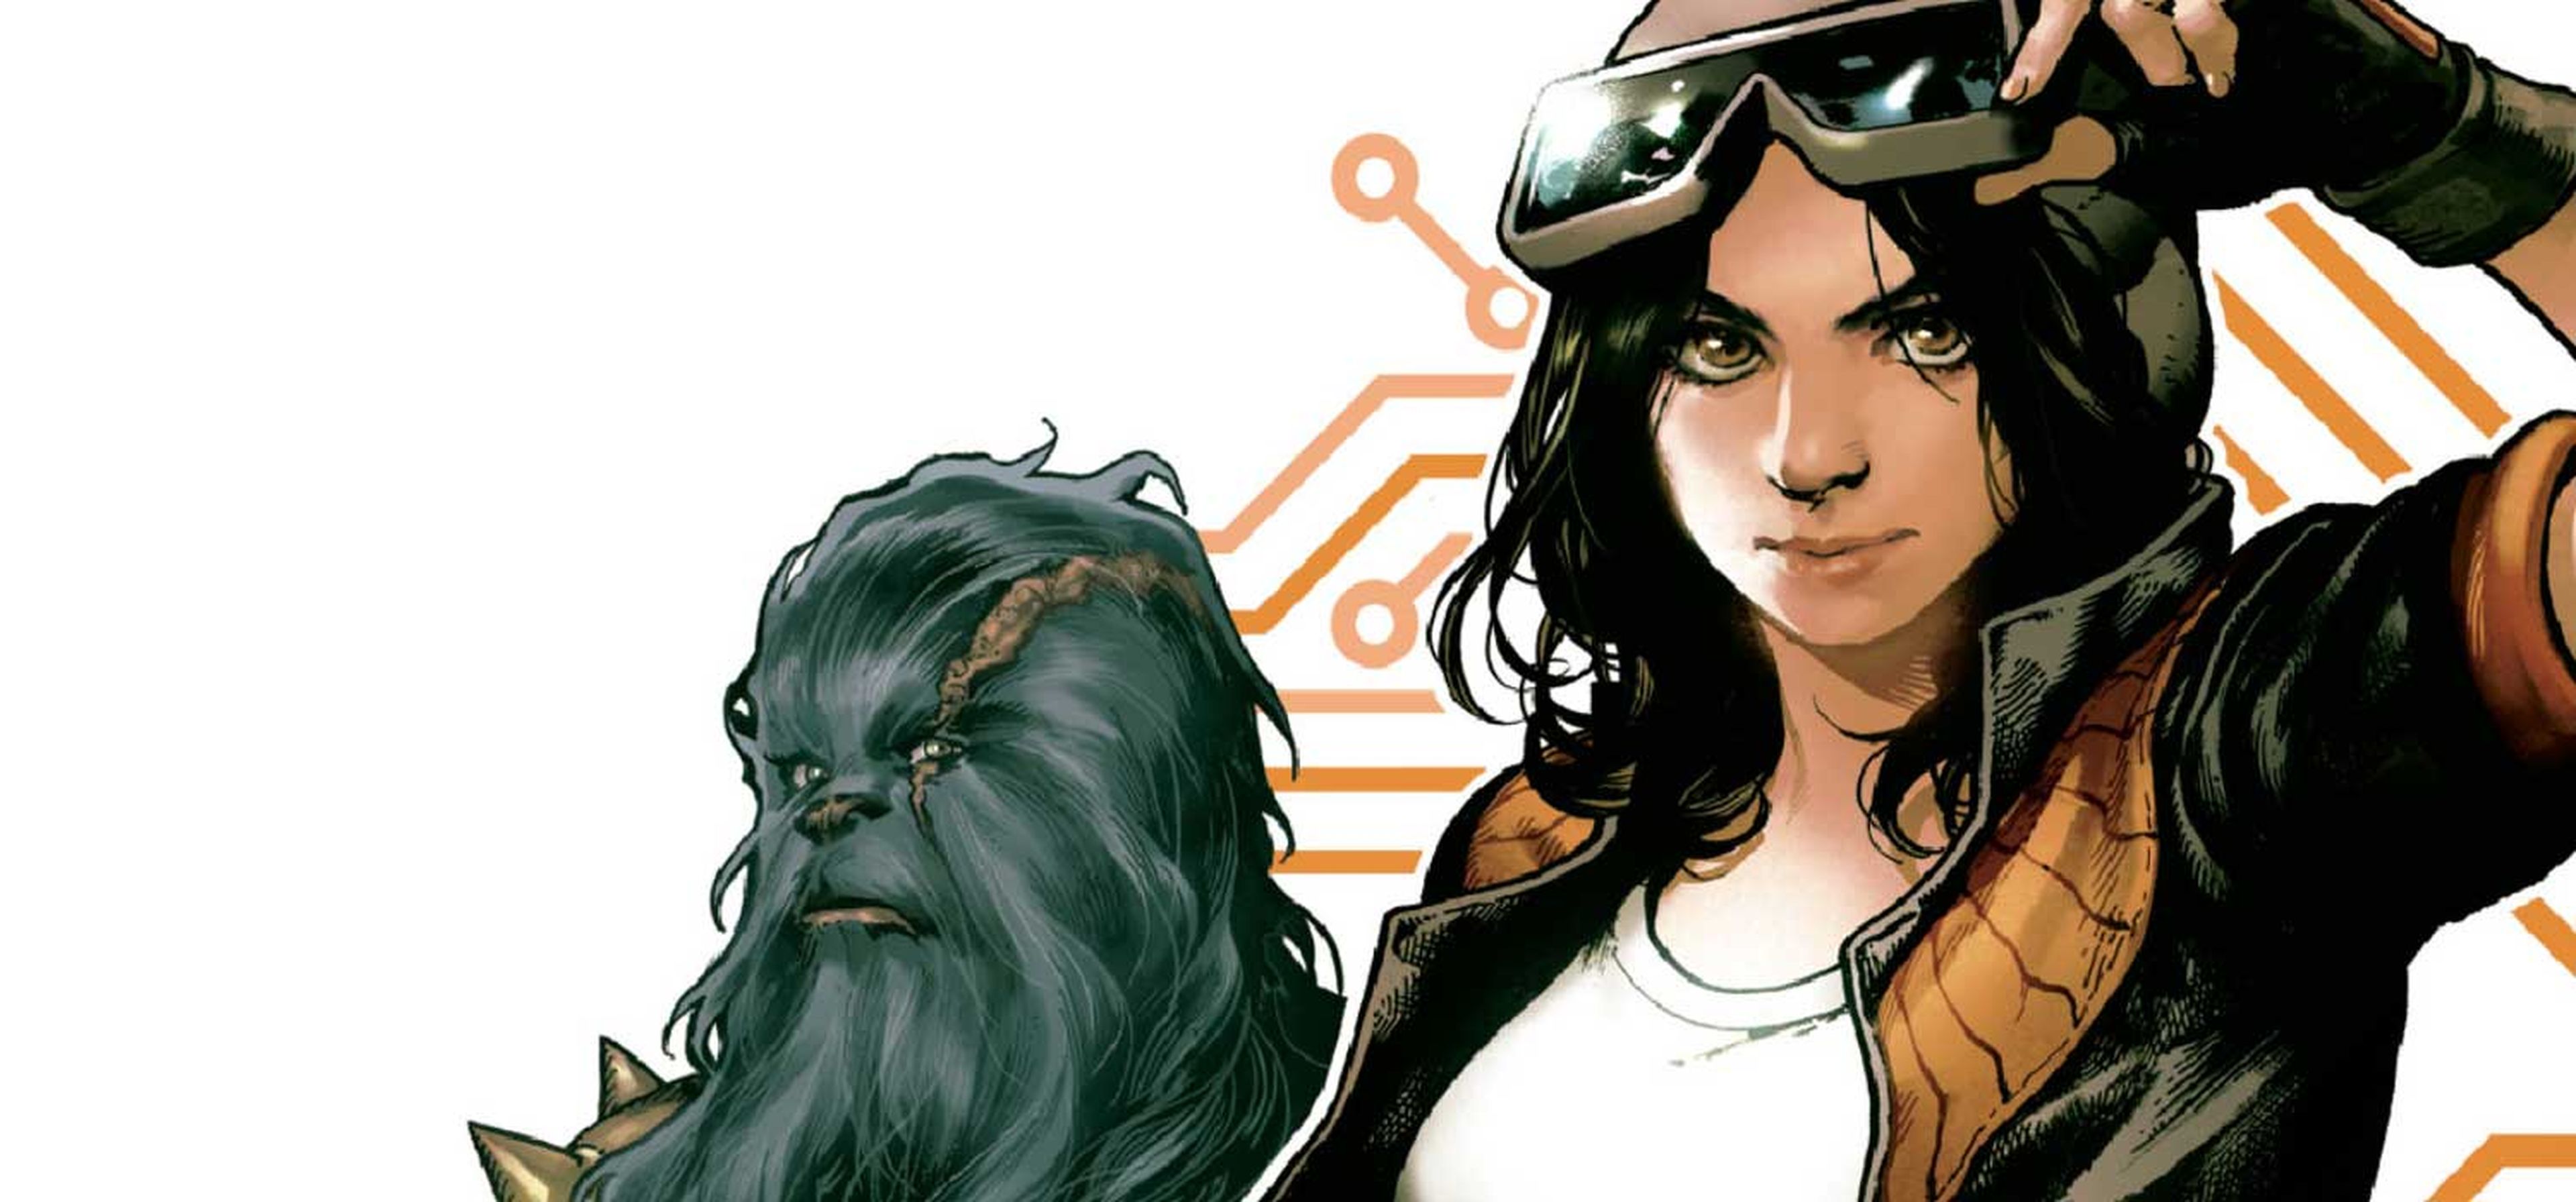 Review de Star Wars: Doctora Aphra, el spin-off de Darth Vader